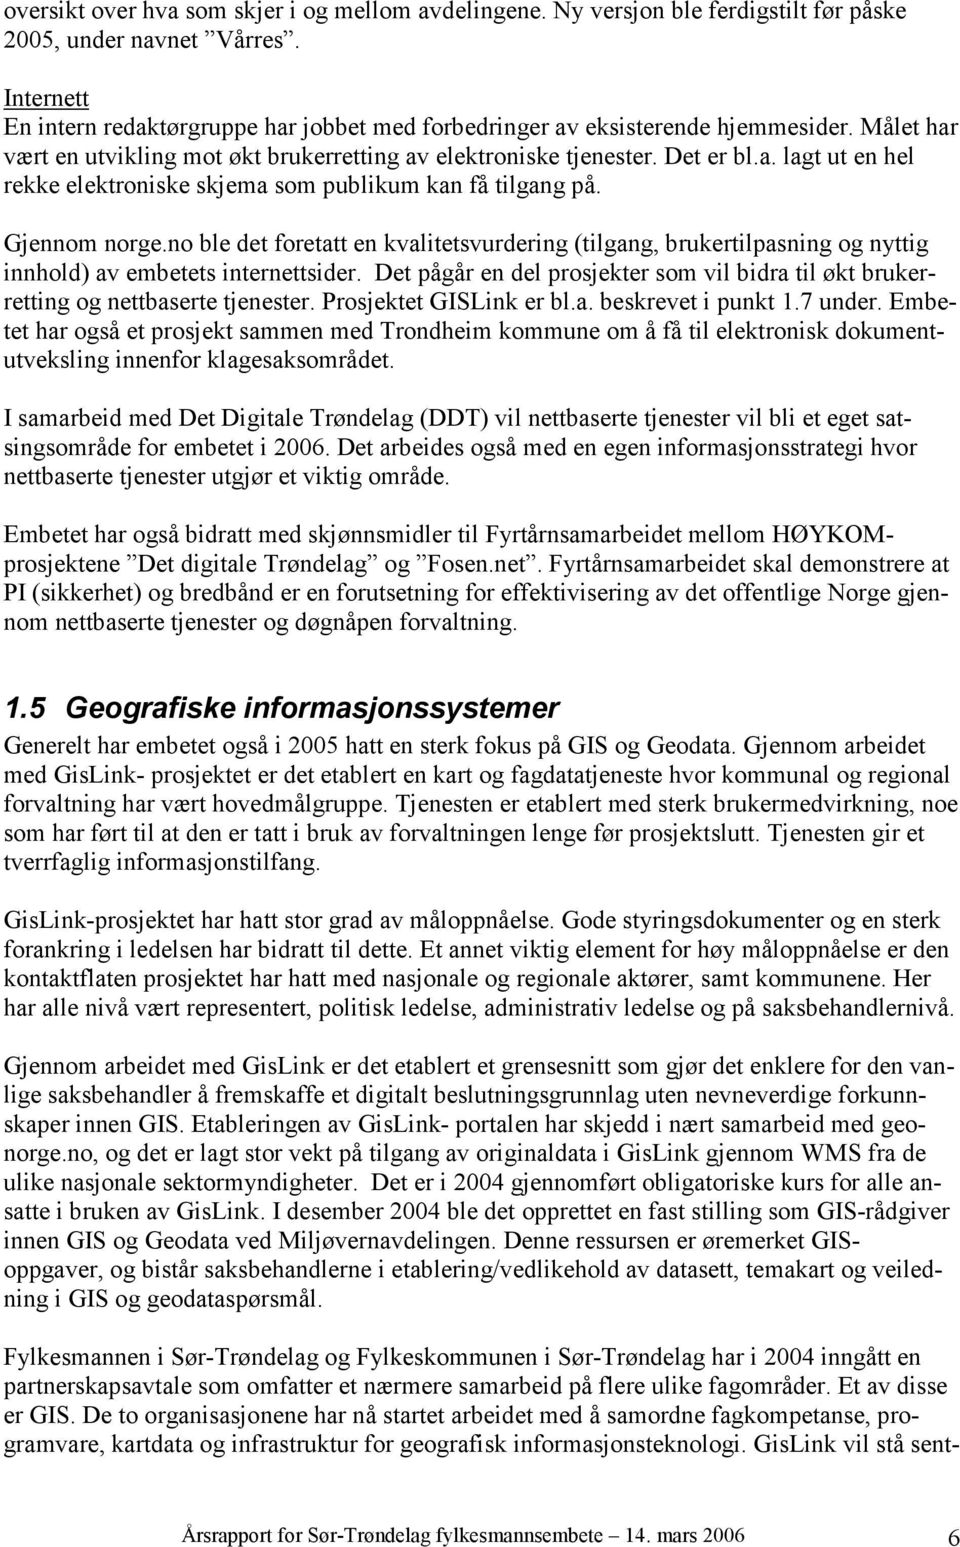 Gjennom norge.no ble det foretatt en kvalitetsvurdering (tilgang, brukertilpasning og nyttig innhold) av embetets internettsider.